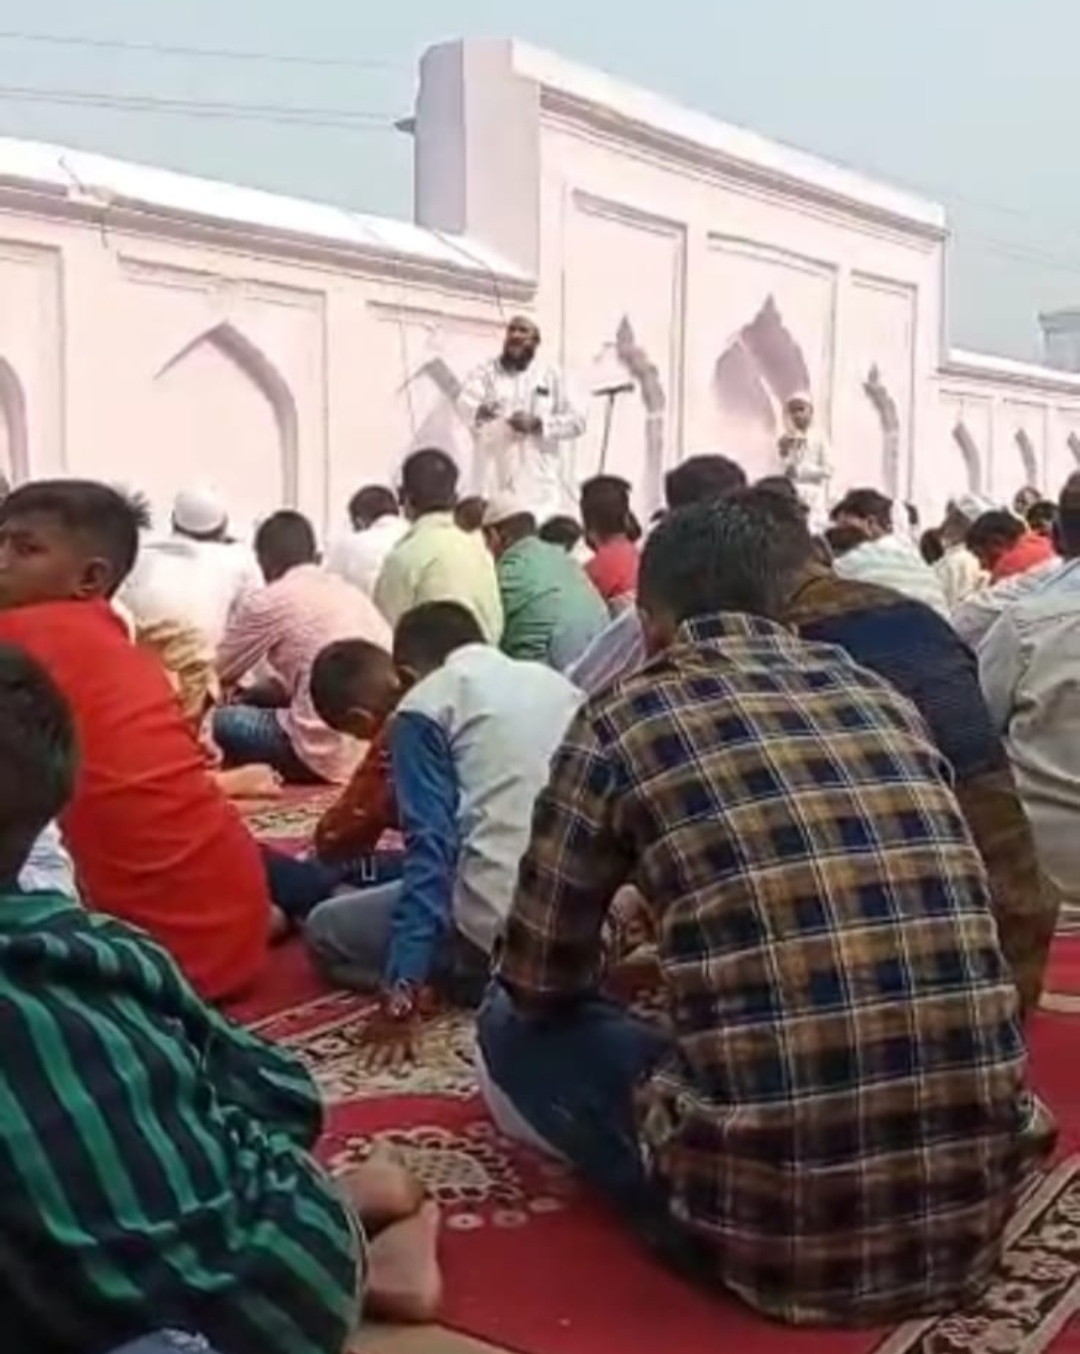 नगर पंचायत बिस्कोहर में ईद उल फितर की नमाज़ अदा कर अमन, चैन, शांति एवं देश की तरक्की के लिए मांगी गई दुआएं | New India Times